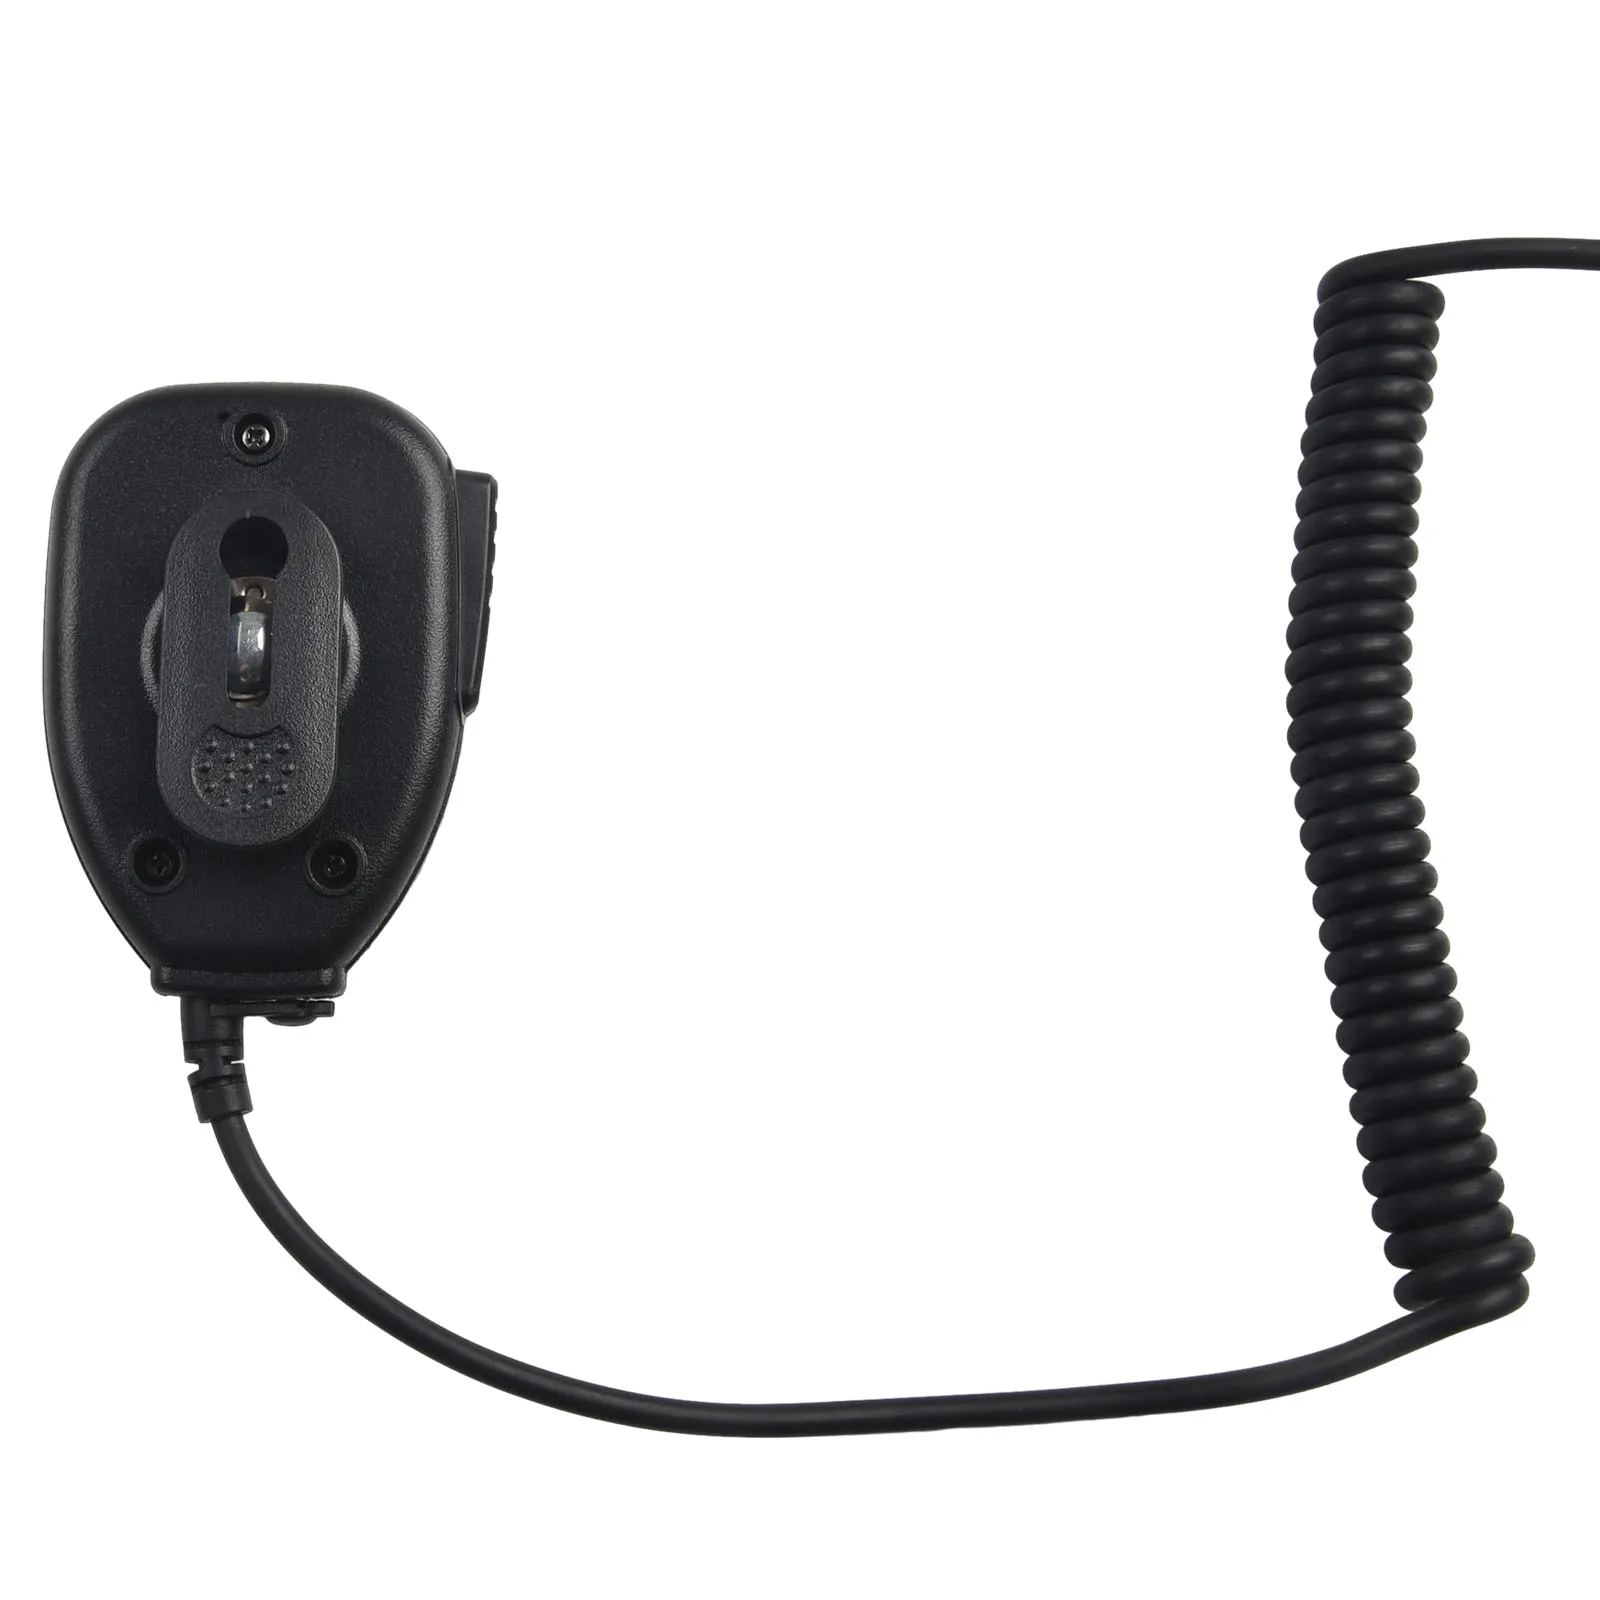 Durable Speaker Microphone Walkie-talkie 3.5mm/2.5mm Jack BF-888S Black For Baofeng Handheld Microphone Speaker